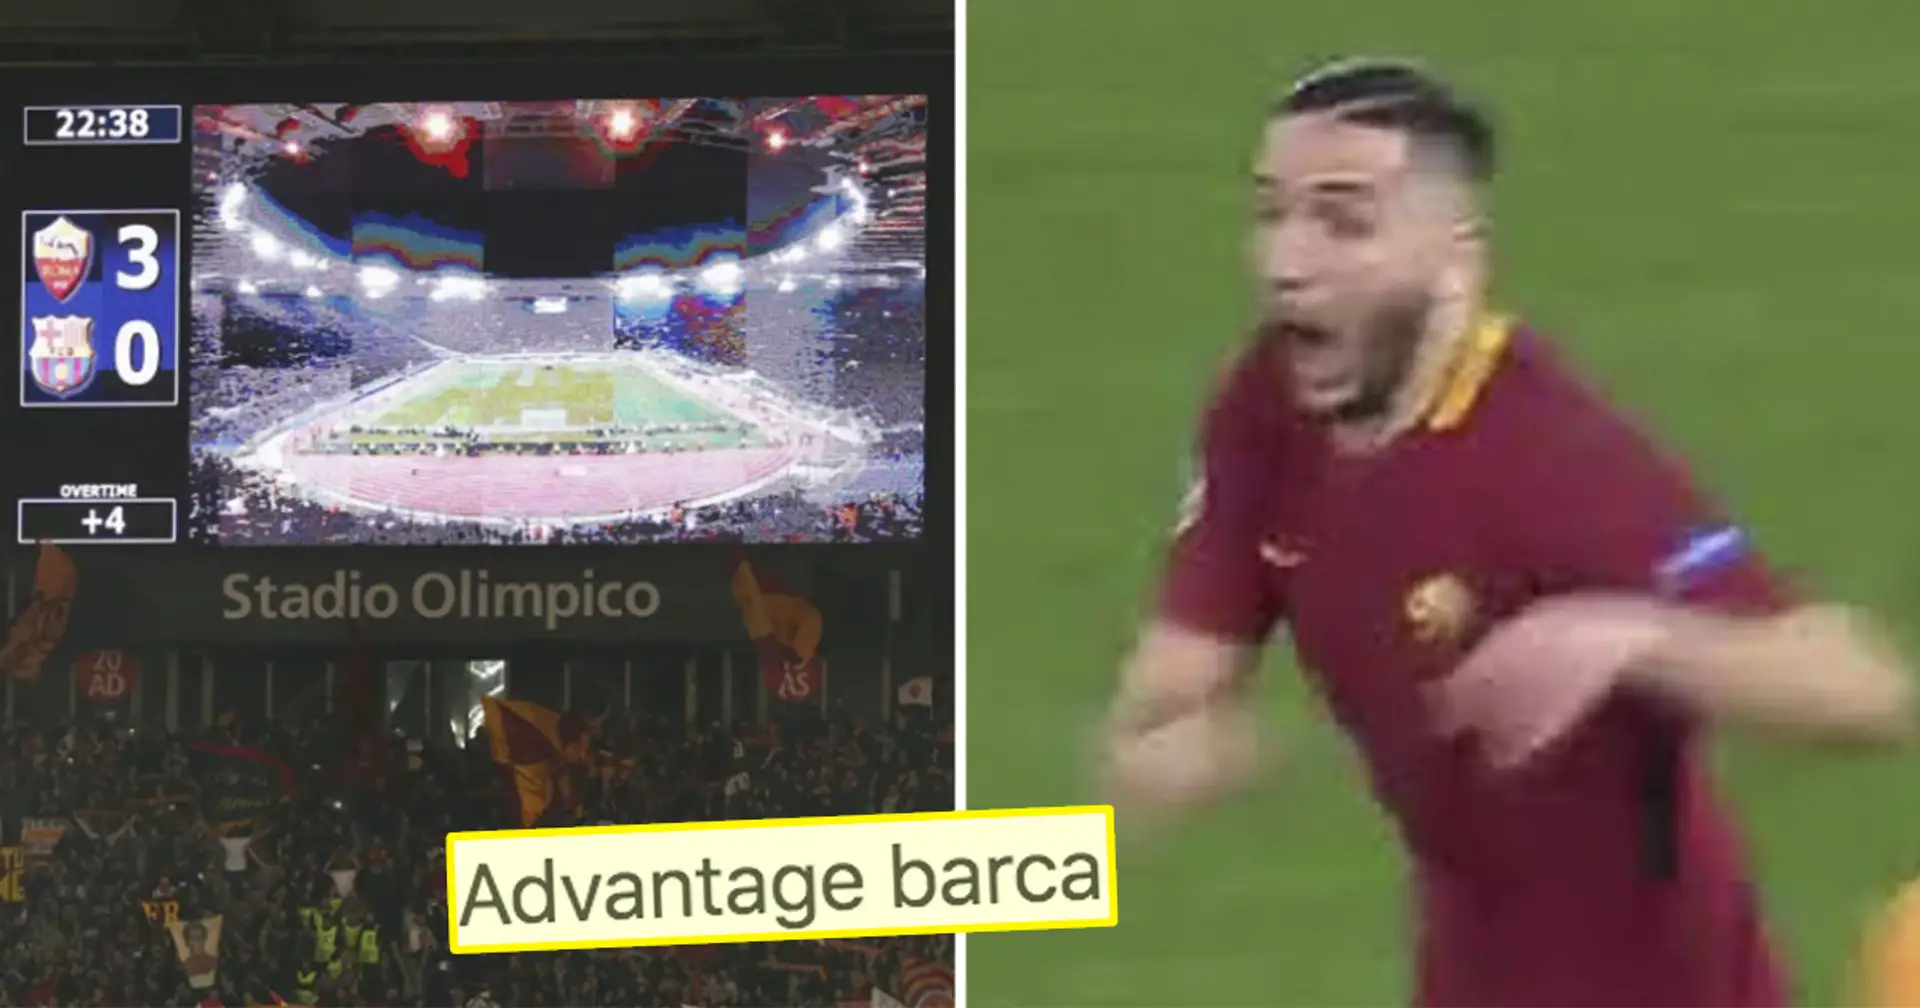 "Le Barça peut respirer un peu ": les fans réagissent alors que le héros de Rome-2018, Manolas, quitte Naples